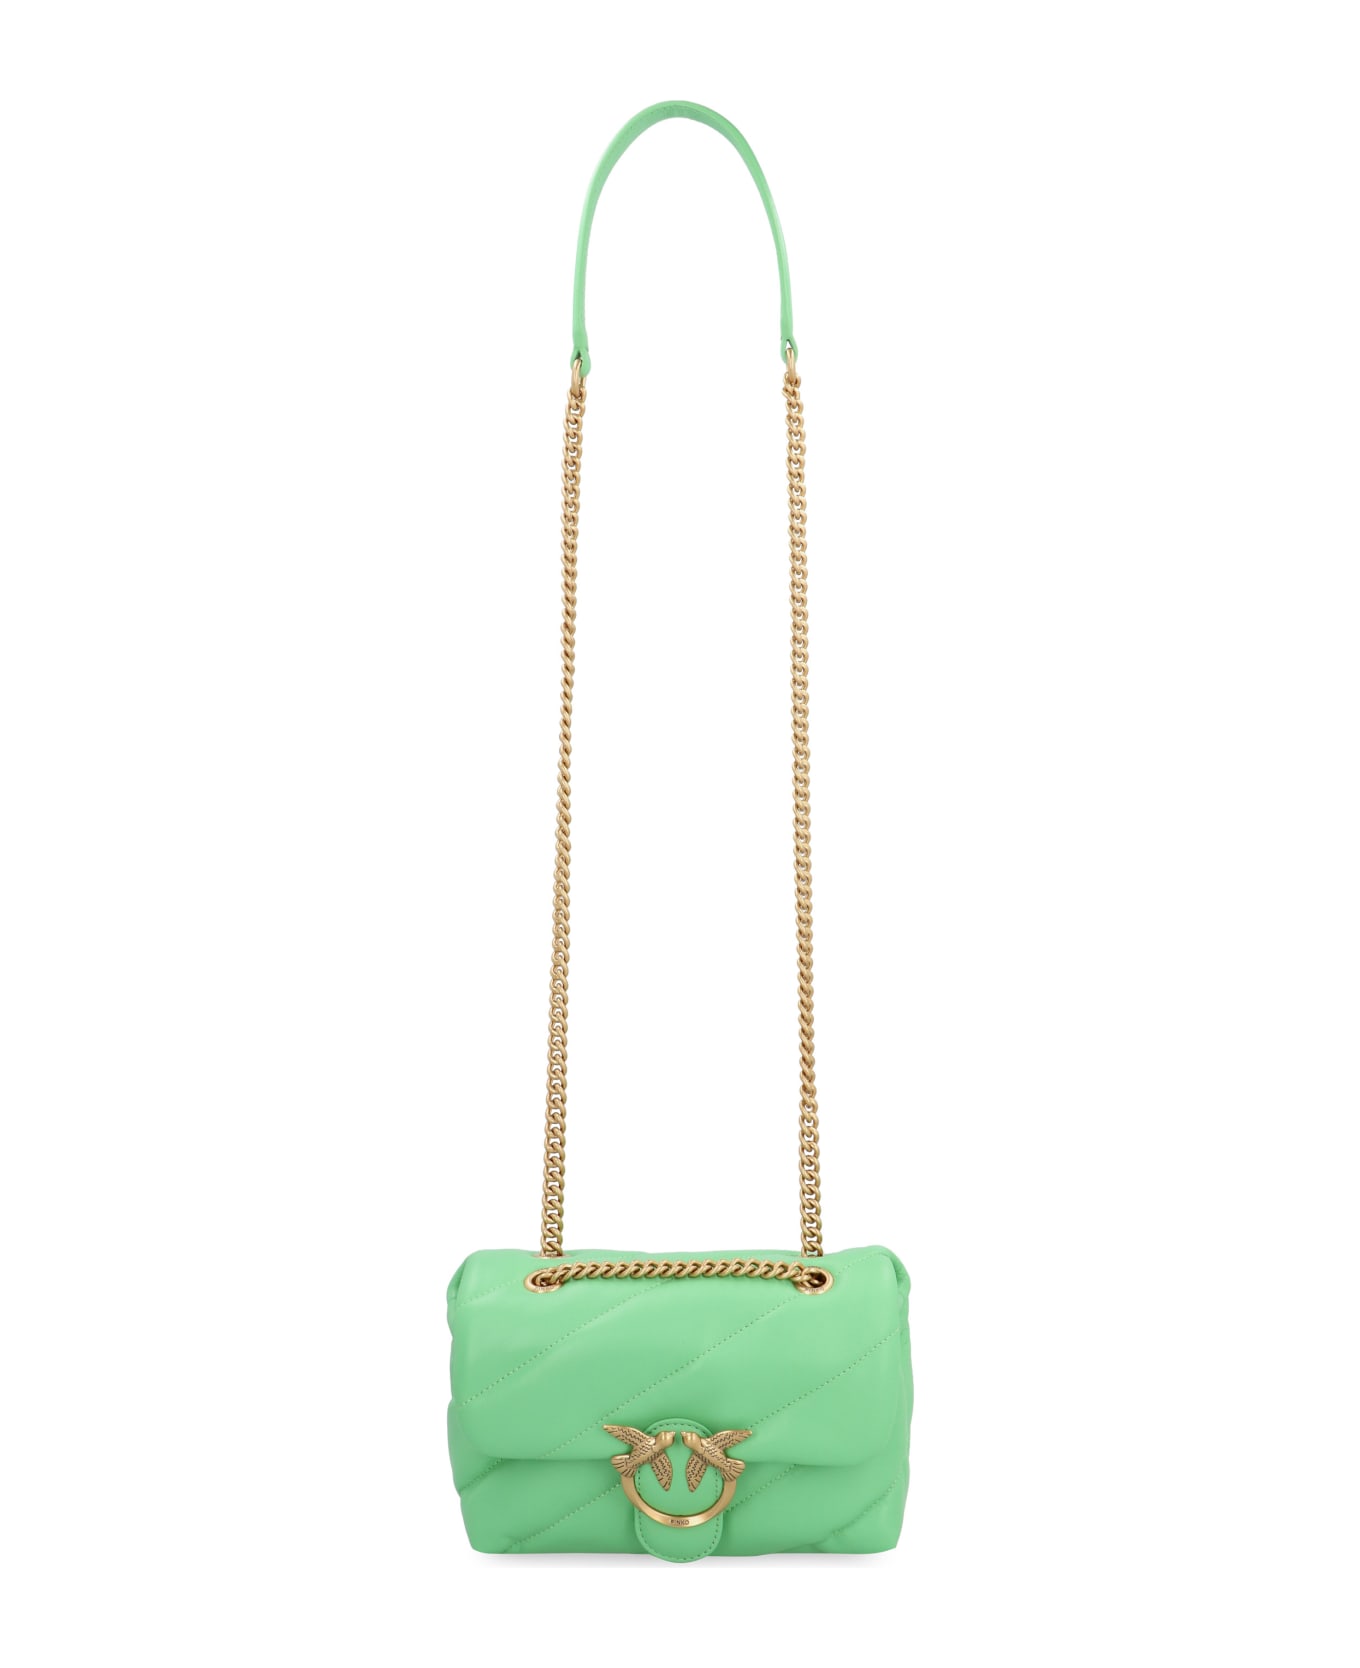 Pinko Love Mini Puff Leather Crossbody Bag - green